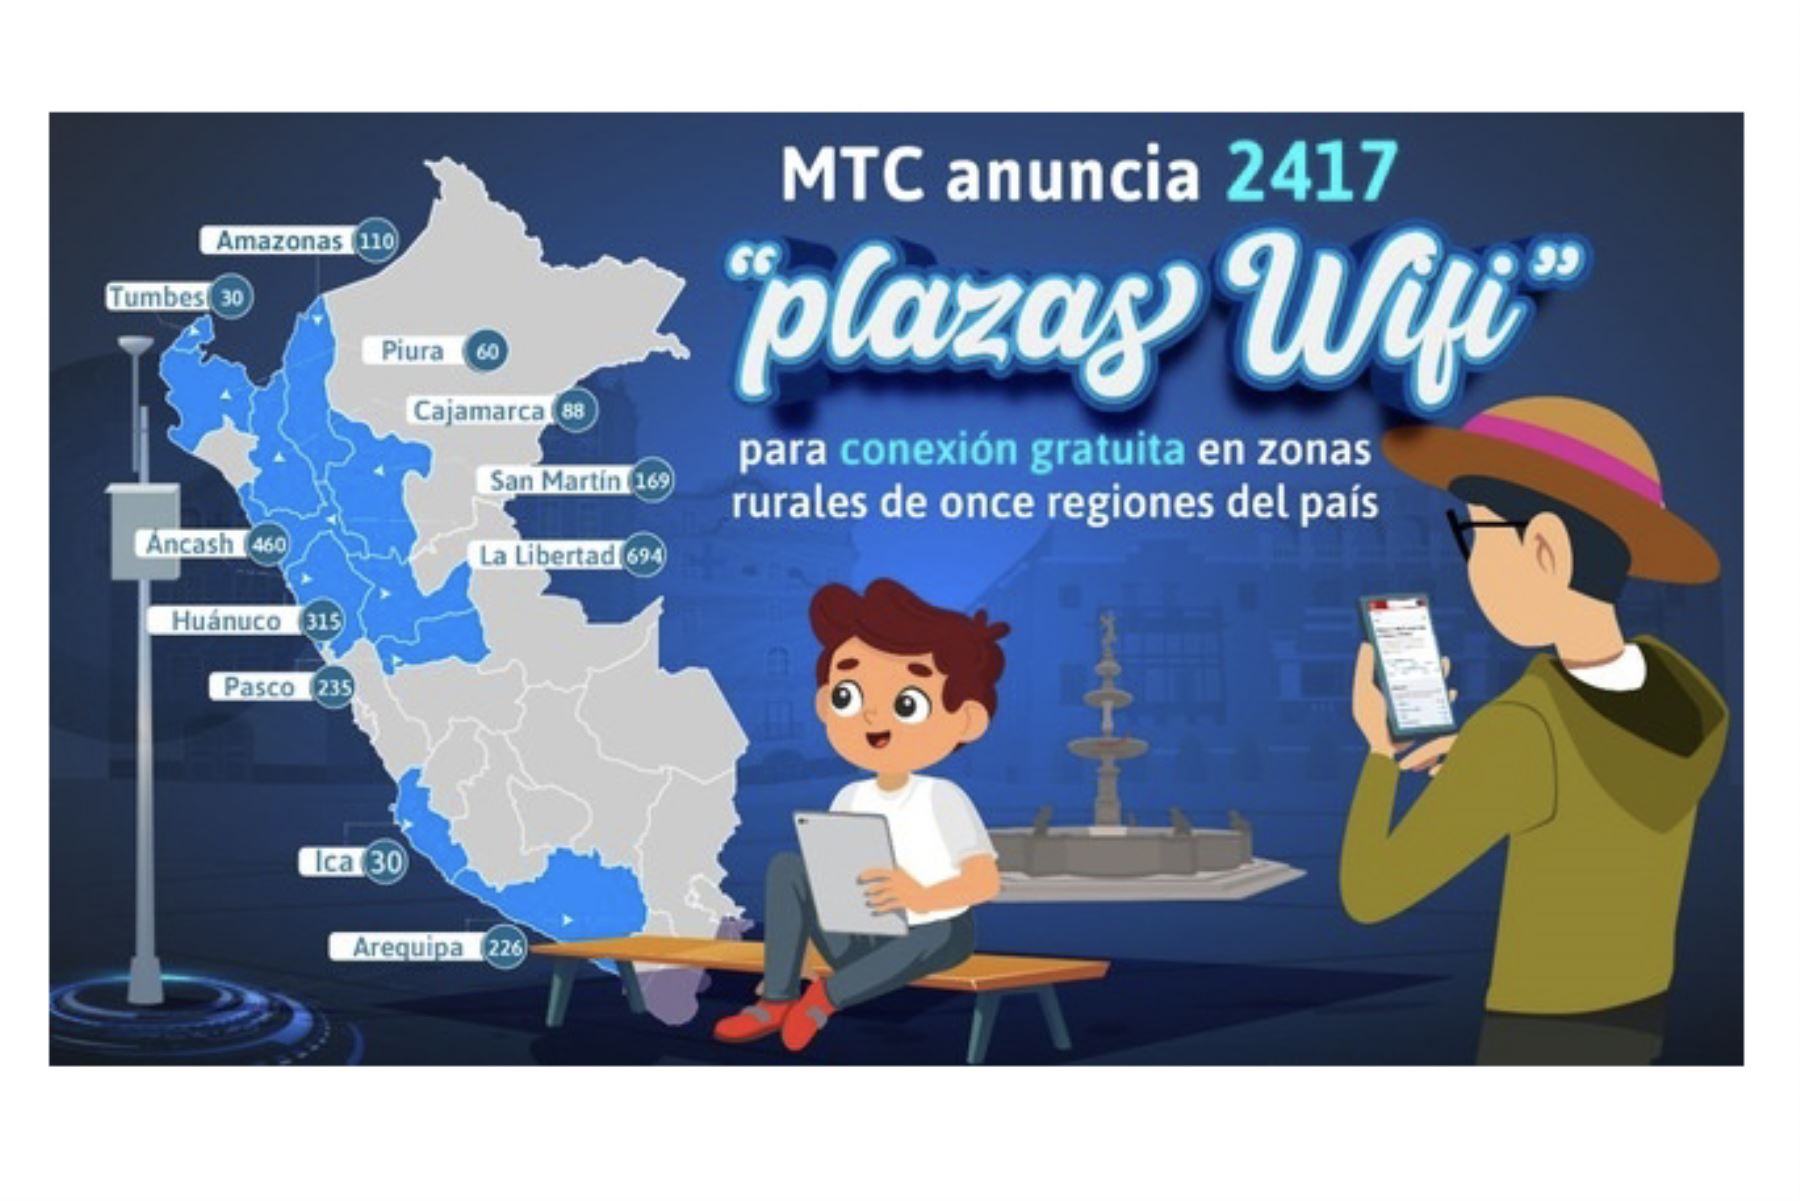 MTC anuncia 2417 “plazas WiFi” para conexión gratuita en zonas rurales de 11 regiones